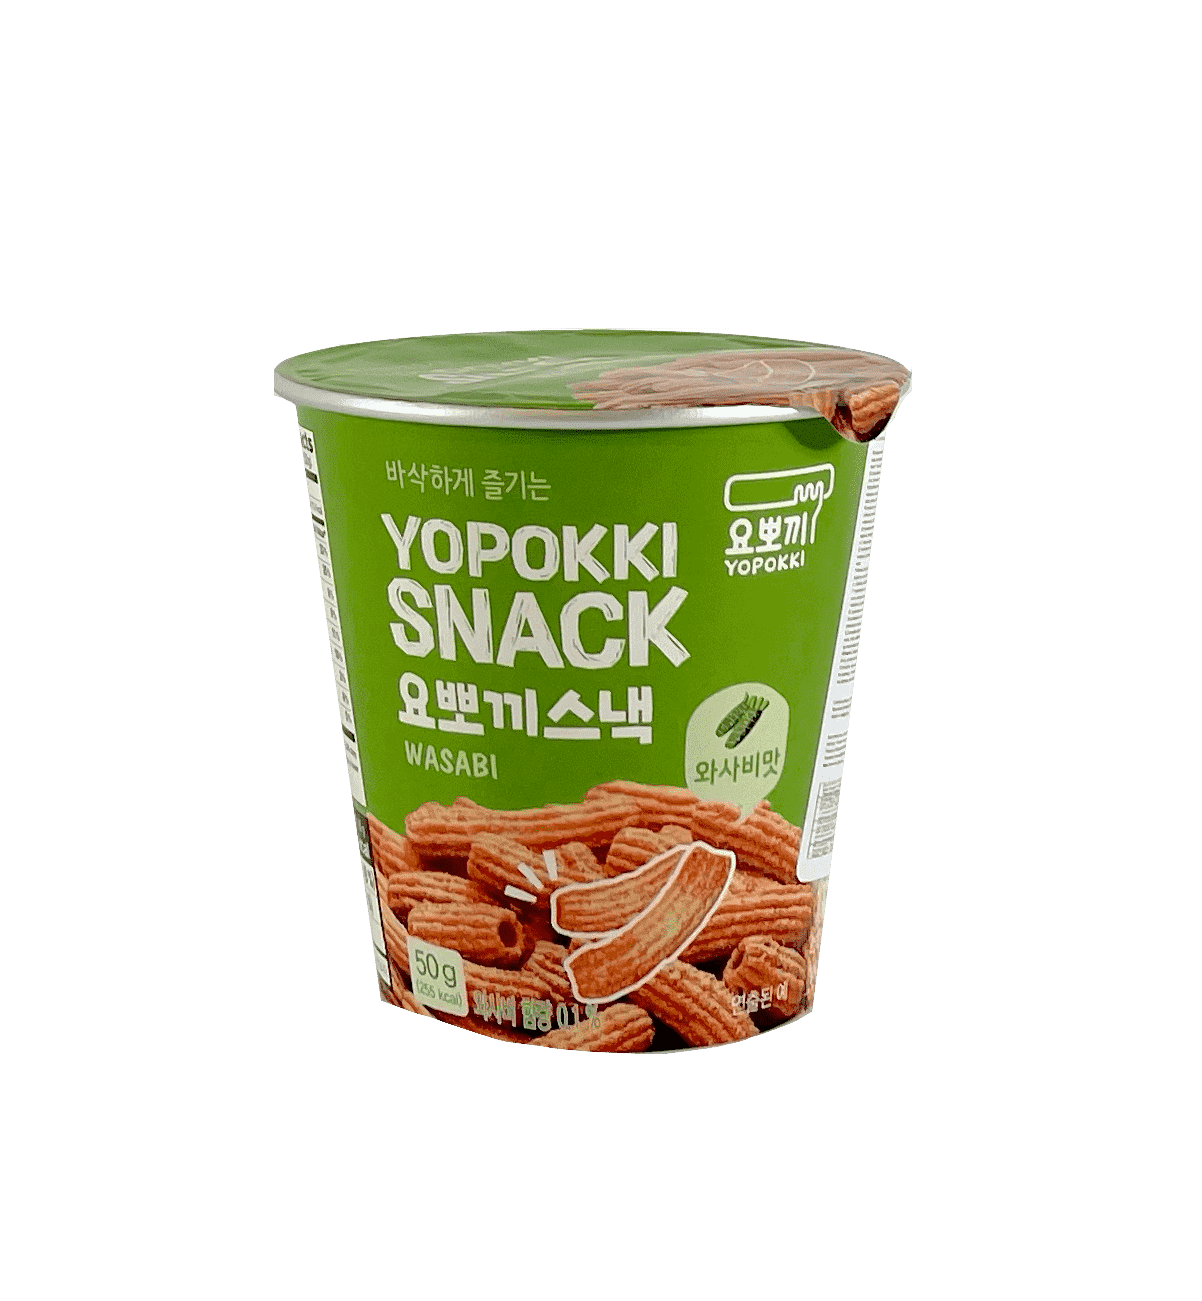 韩国网路人气推荐 - 韩国年糕零食 哇沙比 芥末风味 50g Yopokki 韩国